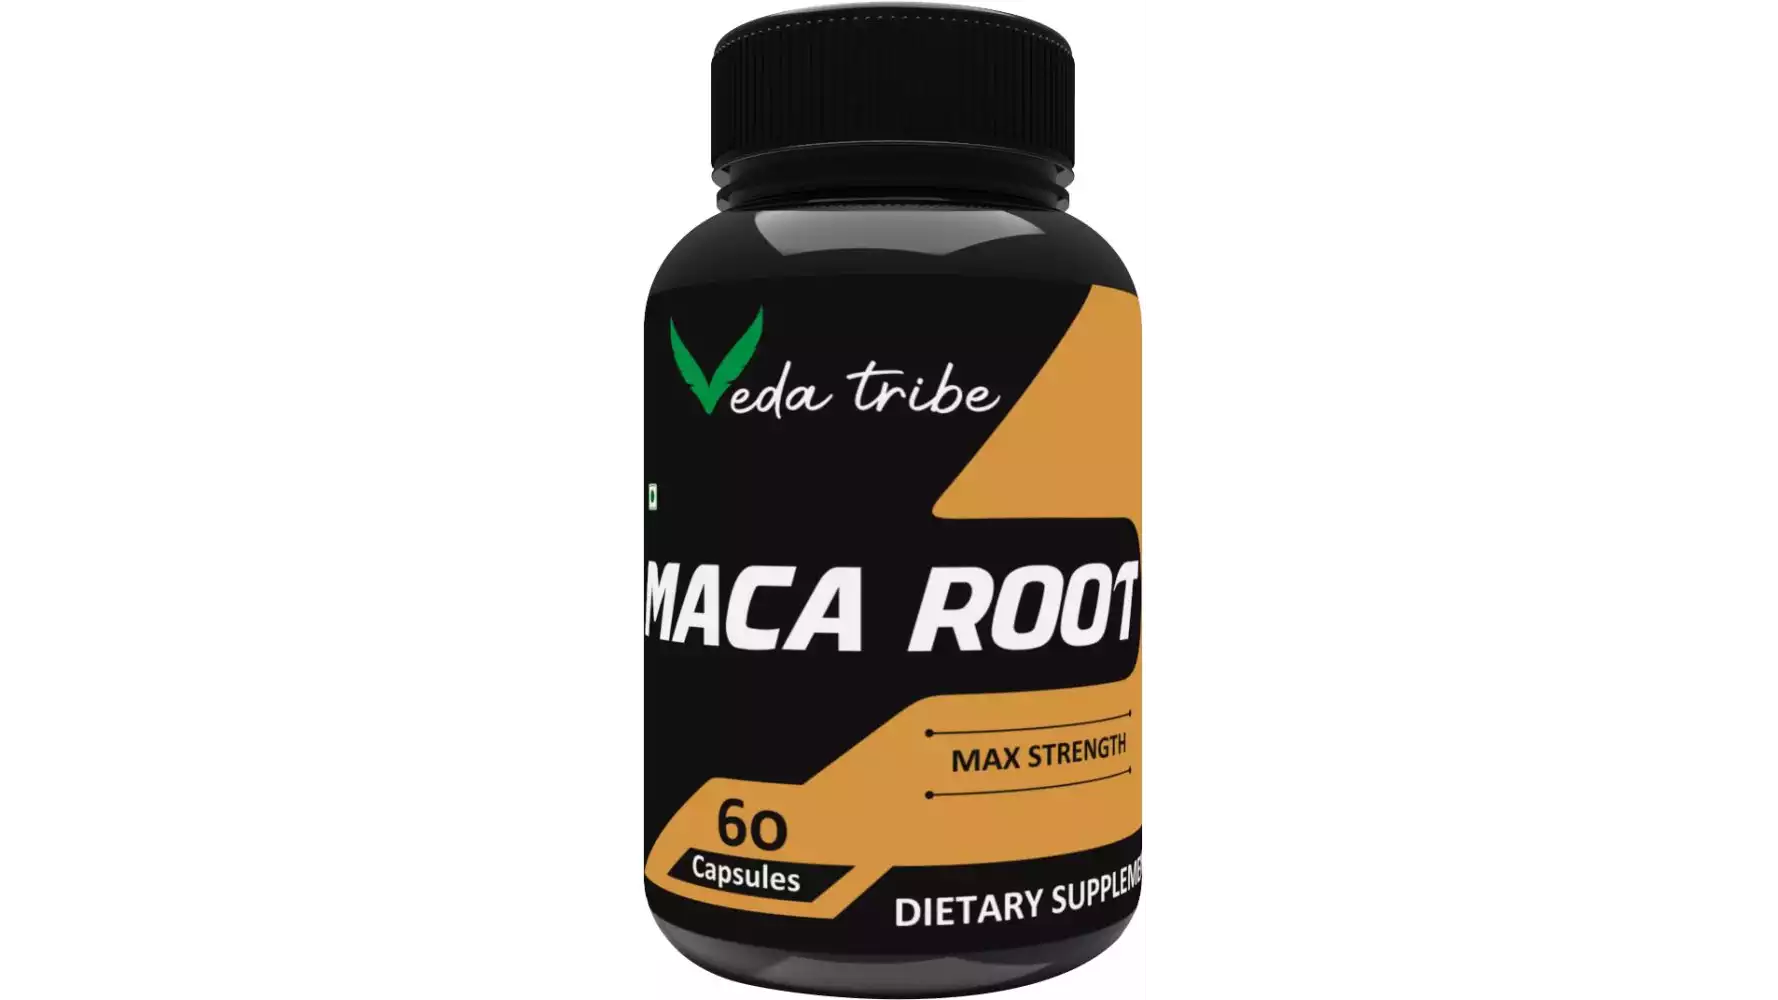 Veda Tribe Maca Root Supplement (60caps)